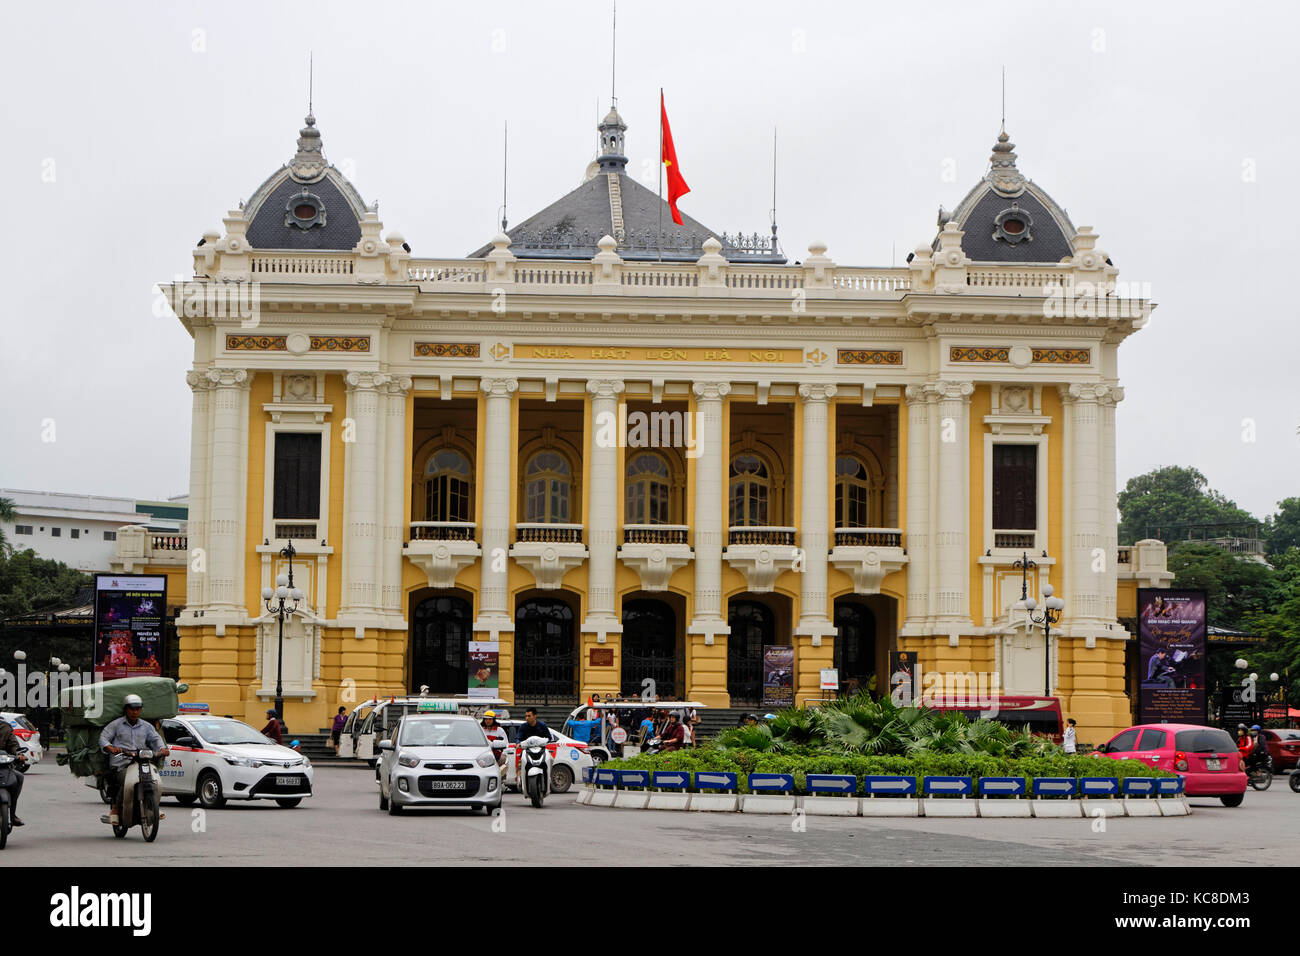 HANOI, VIETNAM, Oktobre 31, 2016 : die Oper von Hanoi, deren Architektur an die Pariser Opera Garnier erinnert. Hanoi ist die Hauptstadt von Vietnam und dem Land Stockfoto